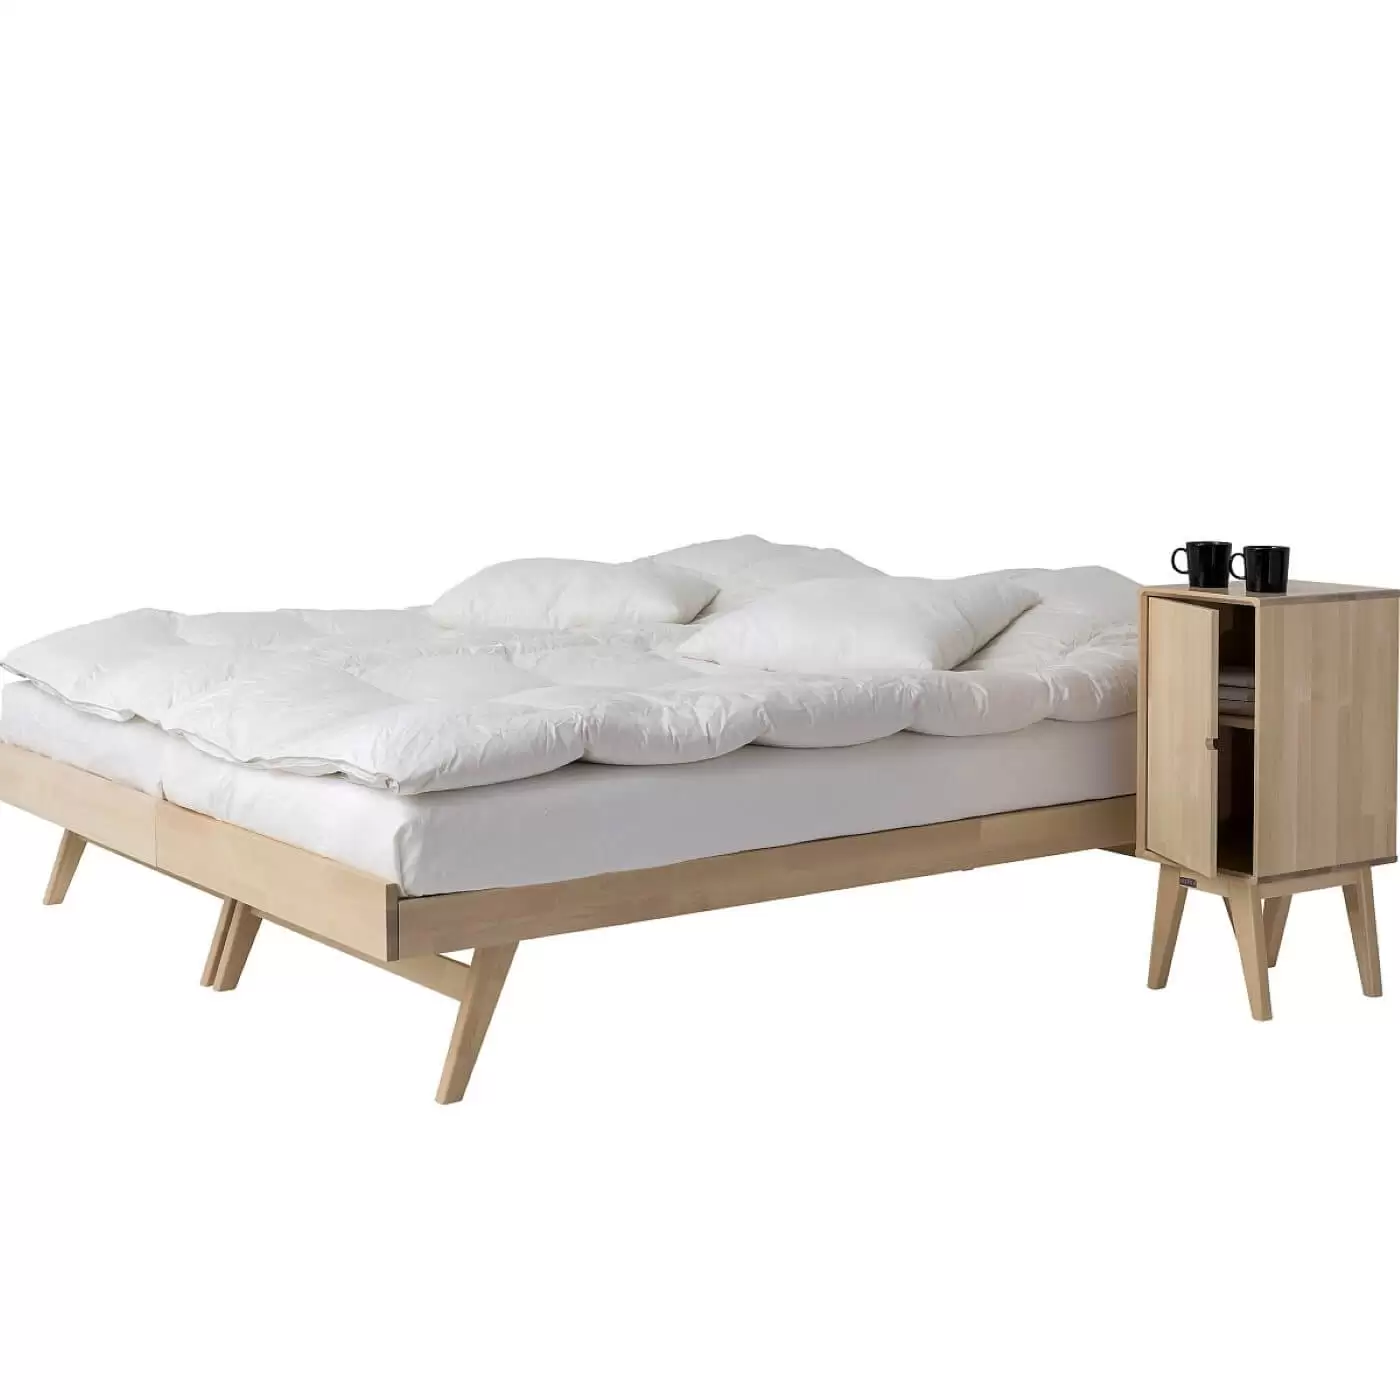 Łóżko na nóżkach NOTTE. Dwa łóżka drewniane z materacami i białą pościelą razem złączone. Obok stoi szafka nocna na nóżkach drewniana z uchylonymi drzwiczkami. Na szafce 2 czarne kubki